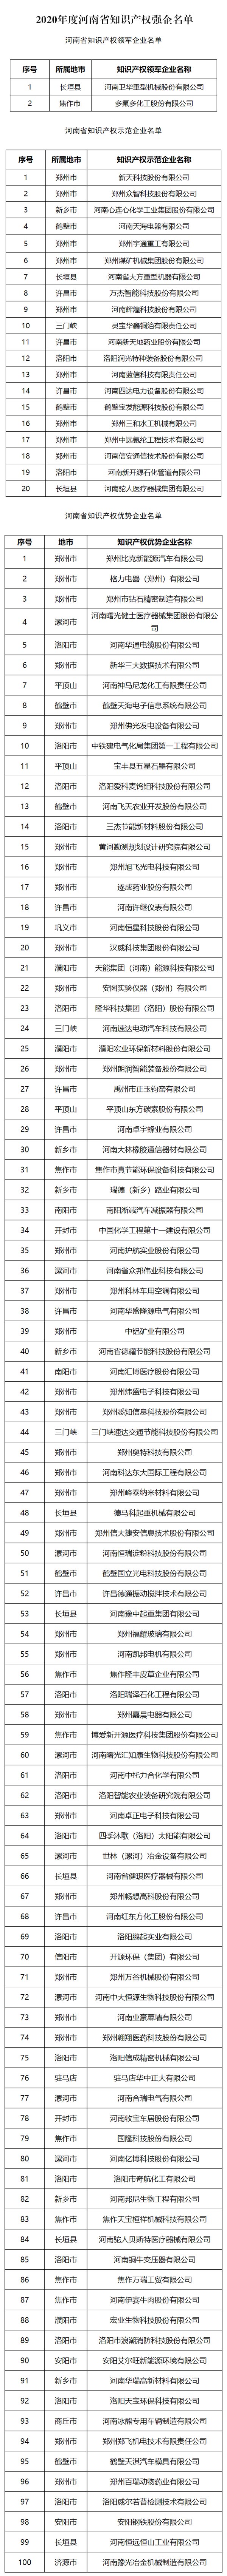 2020年度河南省知识产权强企名单公布 122家企业上榜